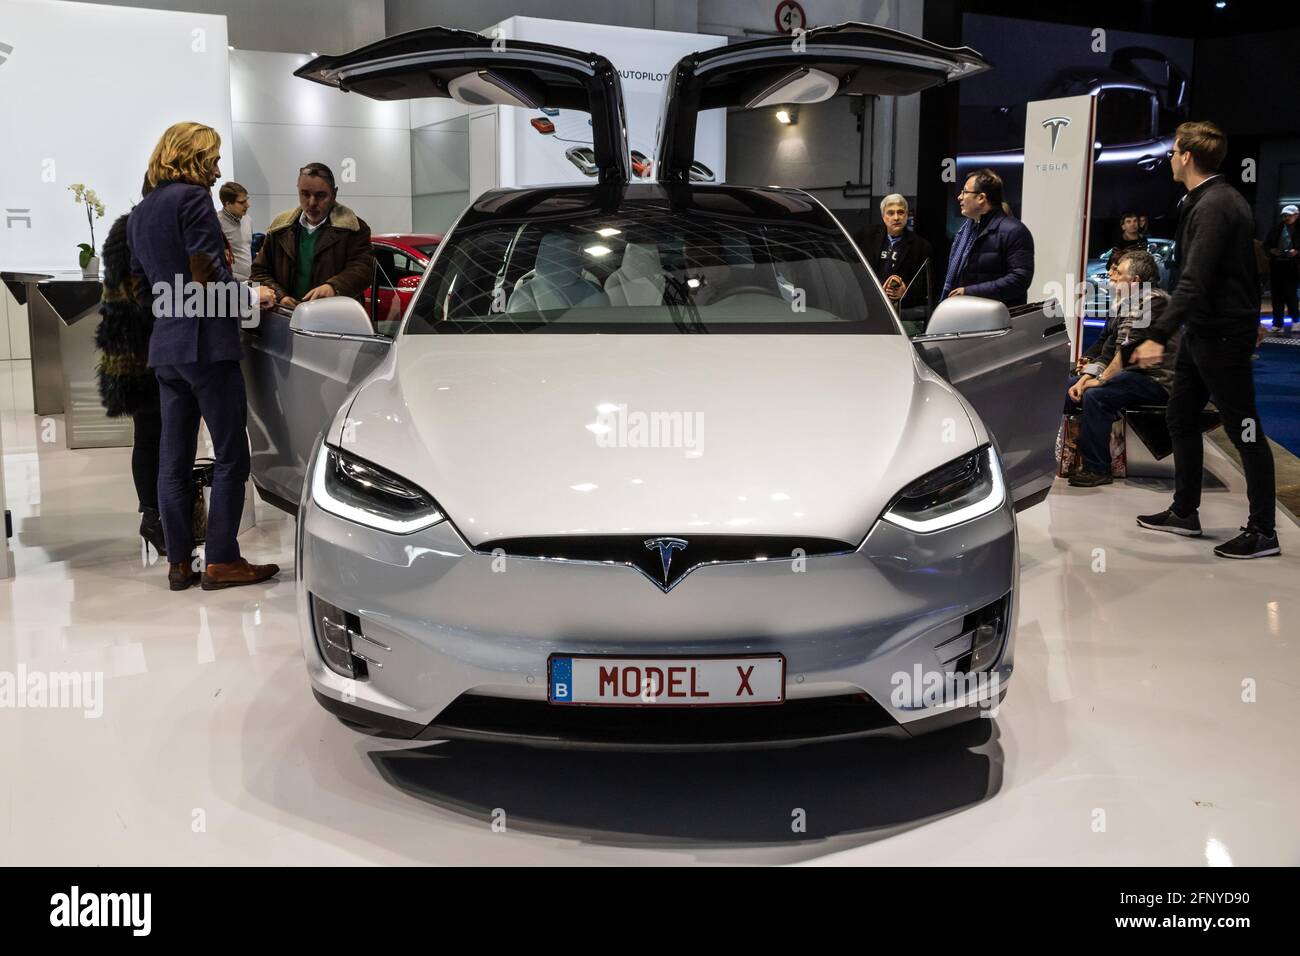 L'auto elettrica Tesla Model X è presentata al salone automobilistico Autosalon di Bruxelles Expo. Belgio - 19 gennaio 2017 Foto Stock